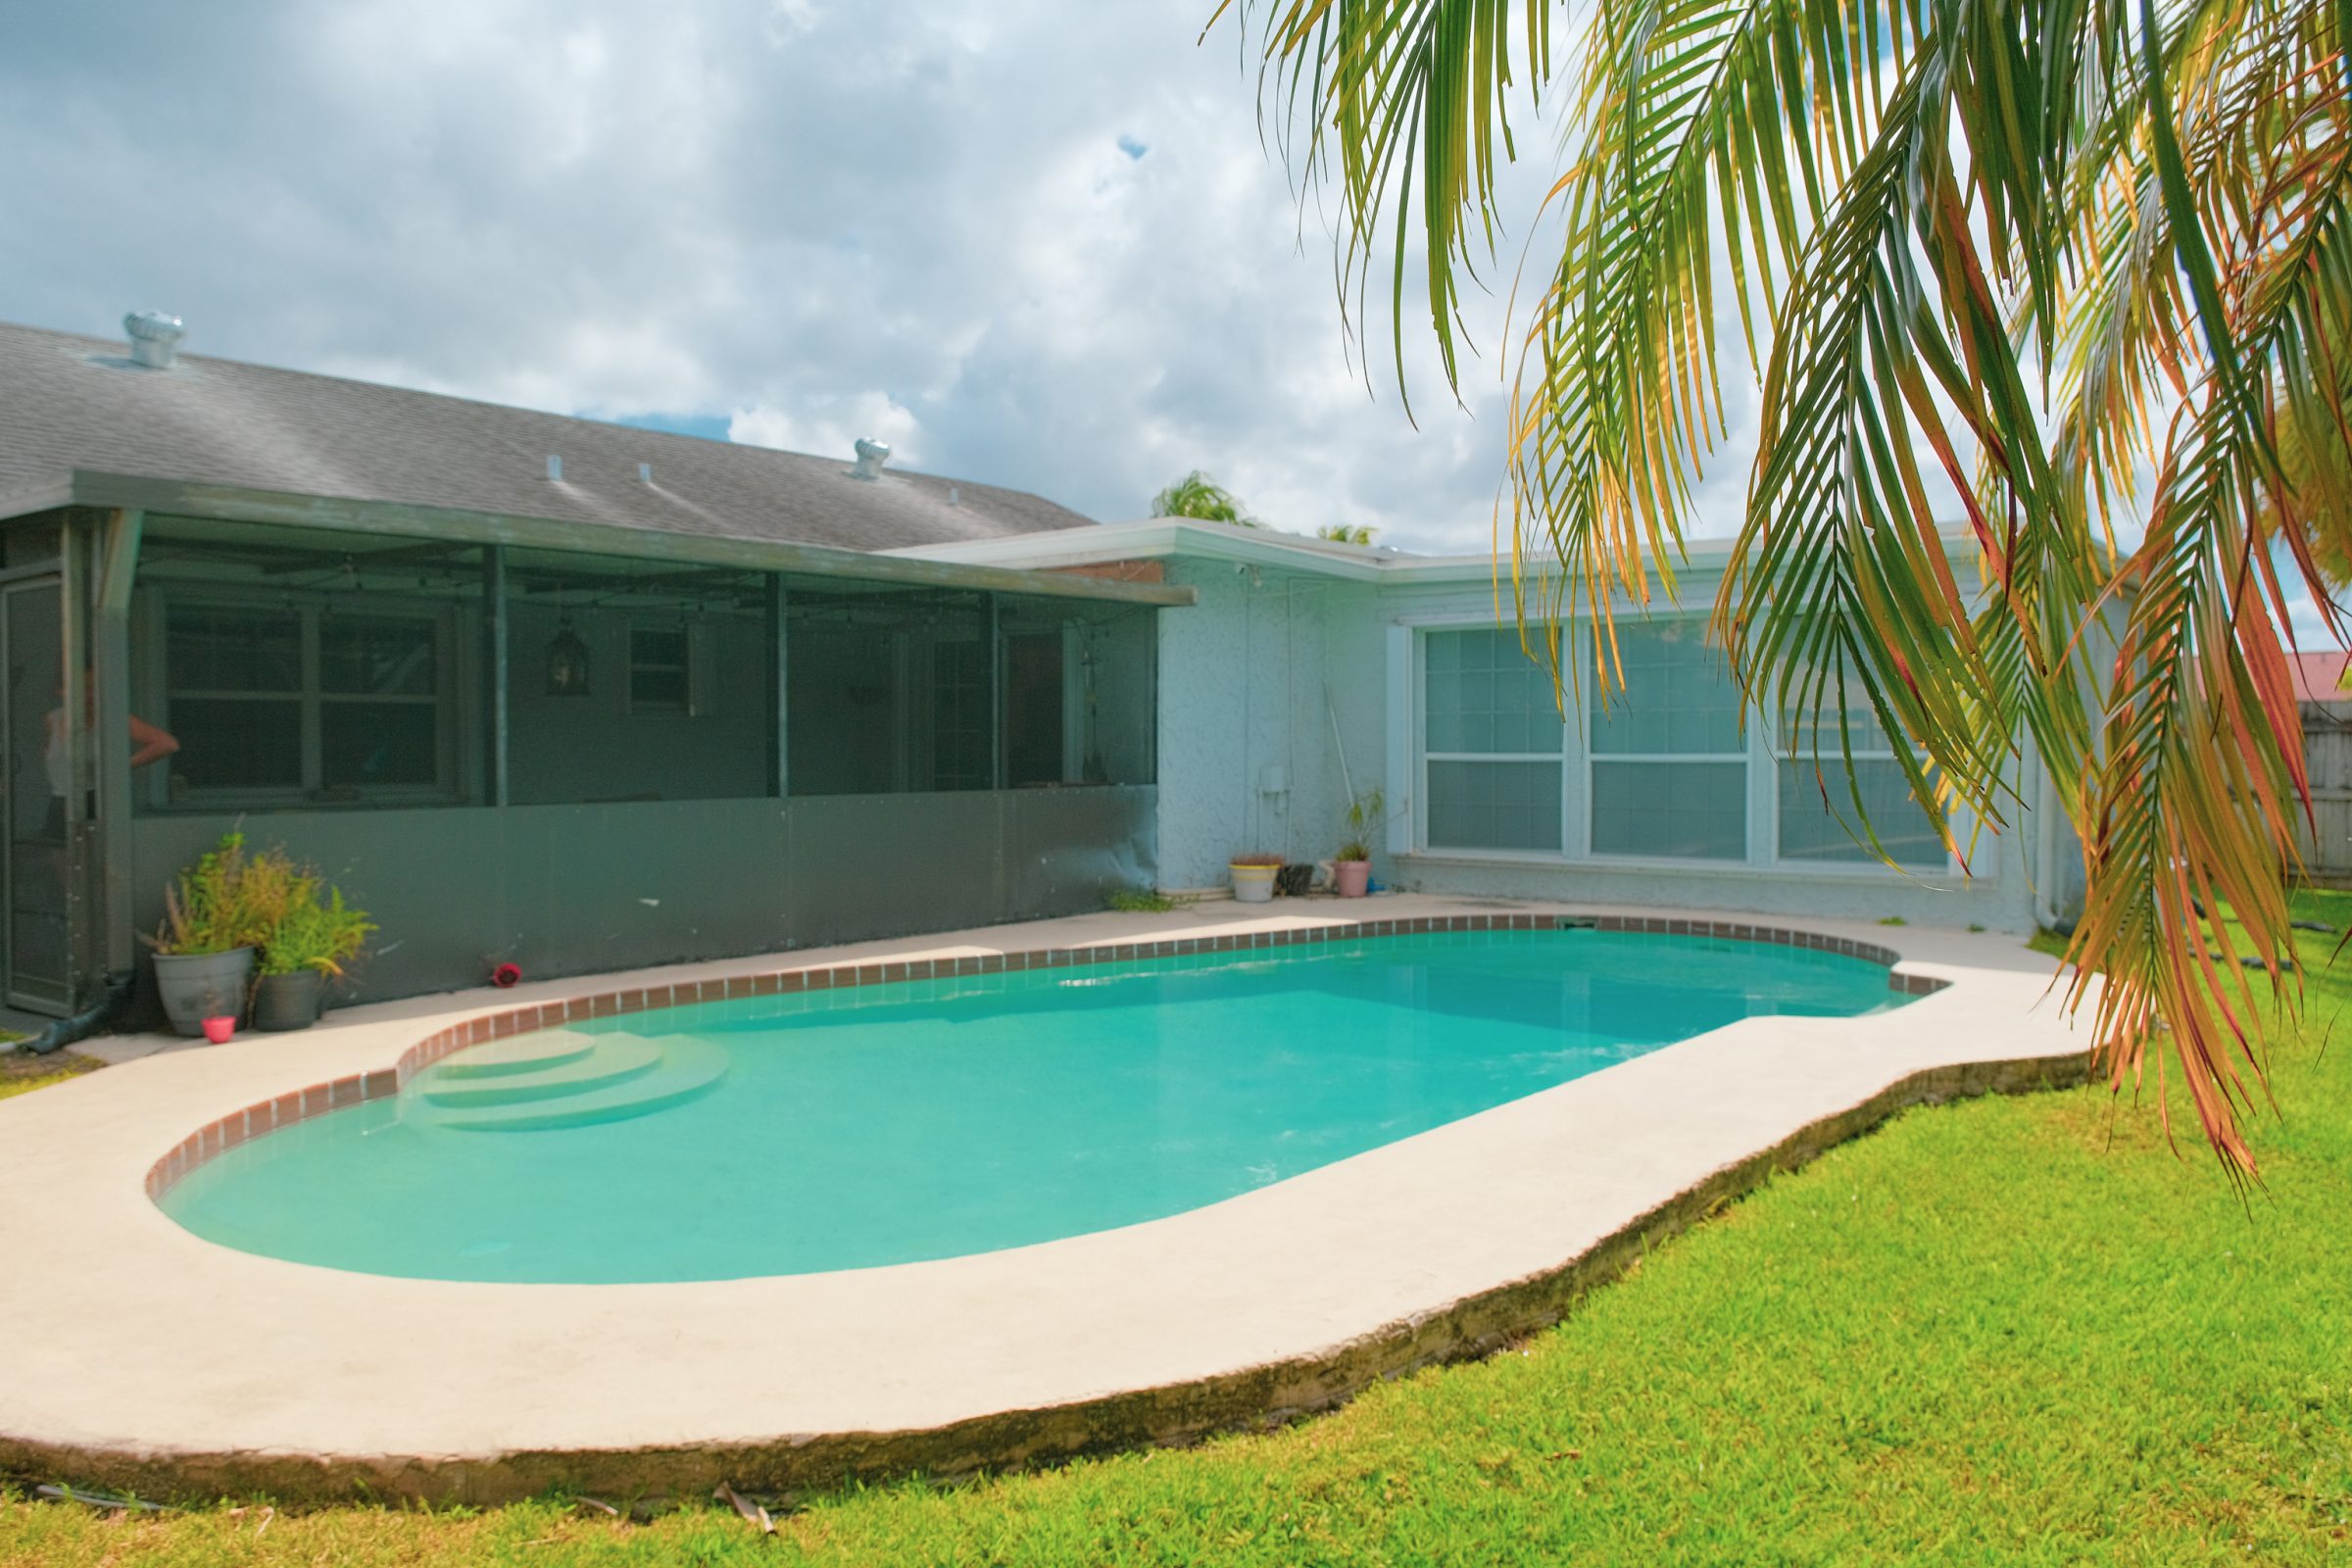 Airbnb in Forth Lauderdale bij Miami | 100 dagen leven in een camper